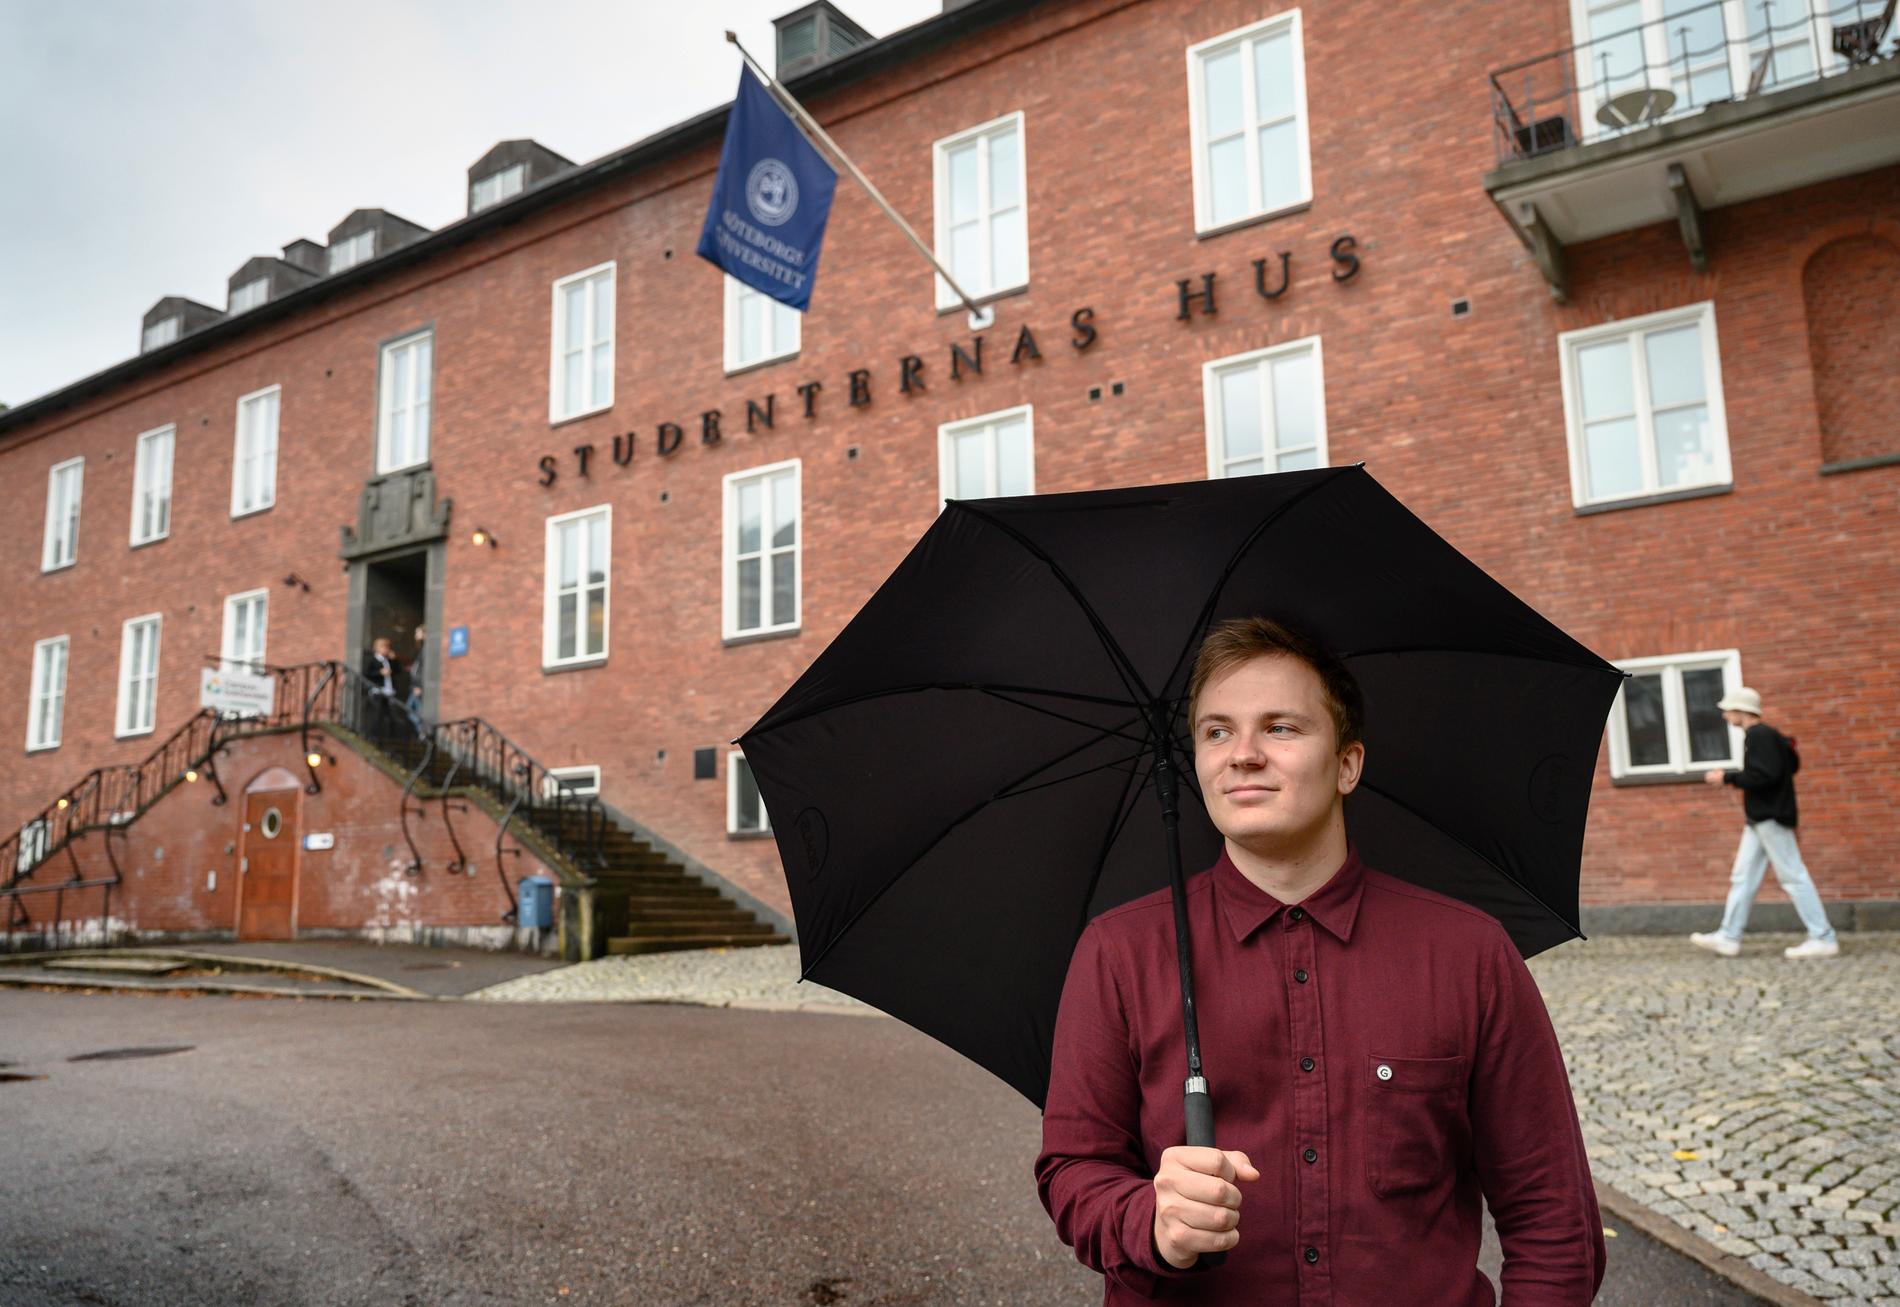 Bostadsbristen är fortsatt ett stort problem för studenter. "Det är svårt, det är många som har problem", säger Axel Andersson, ordförande i Göta studentkår i Göteborg.